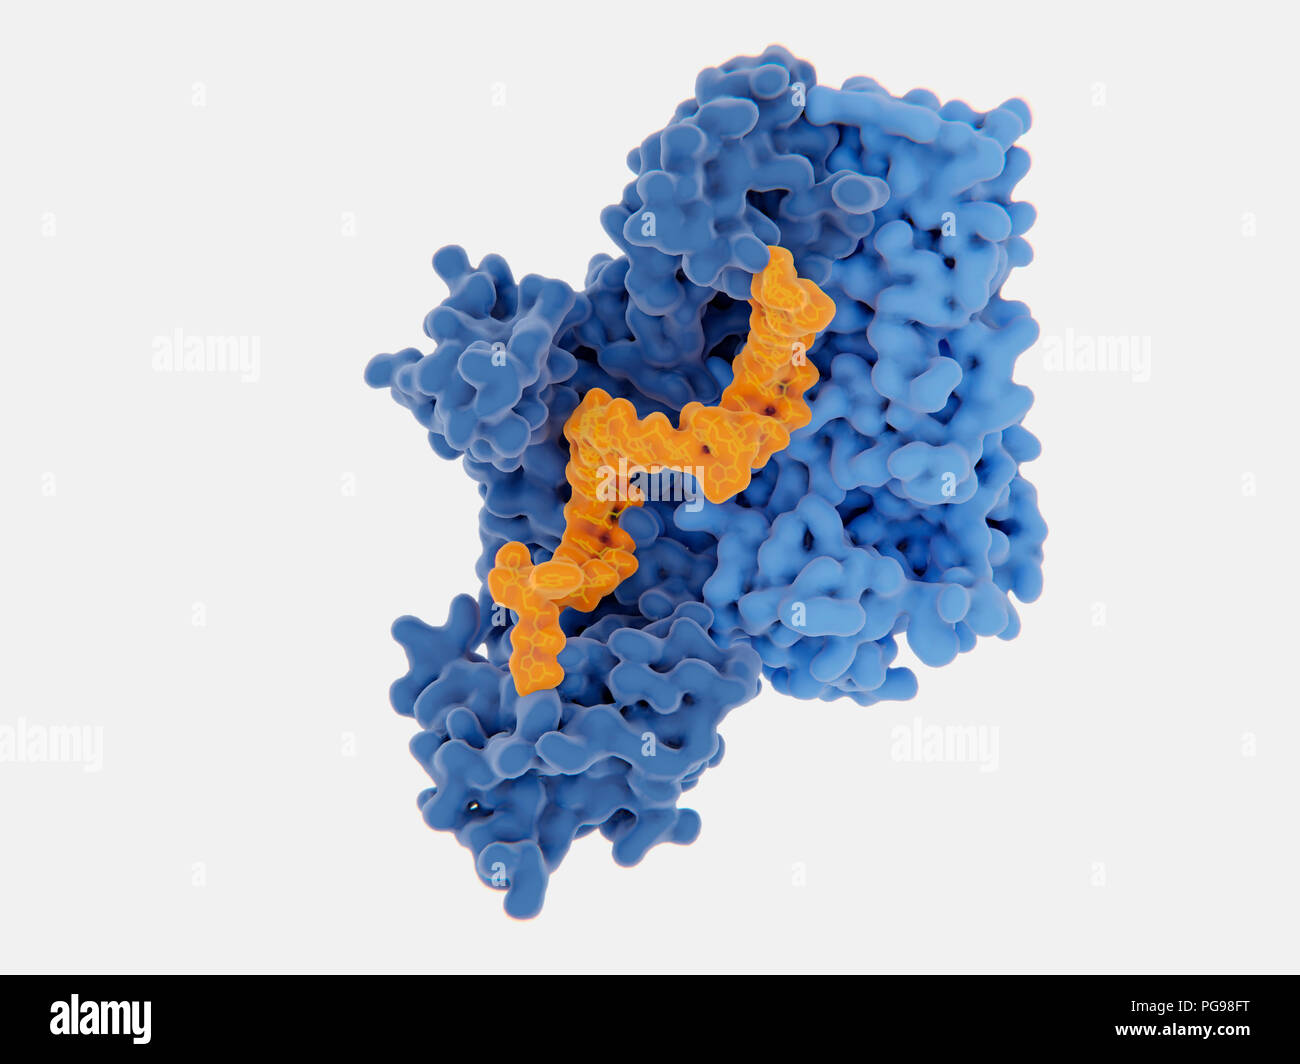 Die reverse Transkriptase von HIV-1-Hemmung, Illustration. Das human immunodeficiency virus Einzelstrang-RNA-Genom in Doppel umgewandelt wird Doppelstrang-DNA, die von der viralen reversen Transkriptase (blau) und dann die DNA in die DNA der infizierten menschlichen Zelle integriert ist. Die reverse Transkriptase ist eines der wichtigsten Ziele der Virus Vermehrung durch einen Inhibitor zu stören. Es gibt Nukleosid und Nukleotid-hemmer, nicht-nukleosidische Hemmer. Eine dieser Inhibitoren (Gelb) angezeigt wird, die Bindung an die reverse Transkriptase. Stockfoto